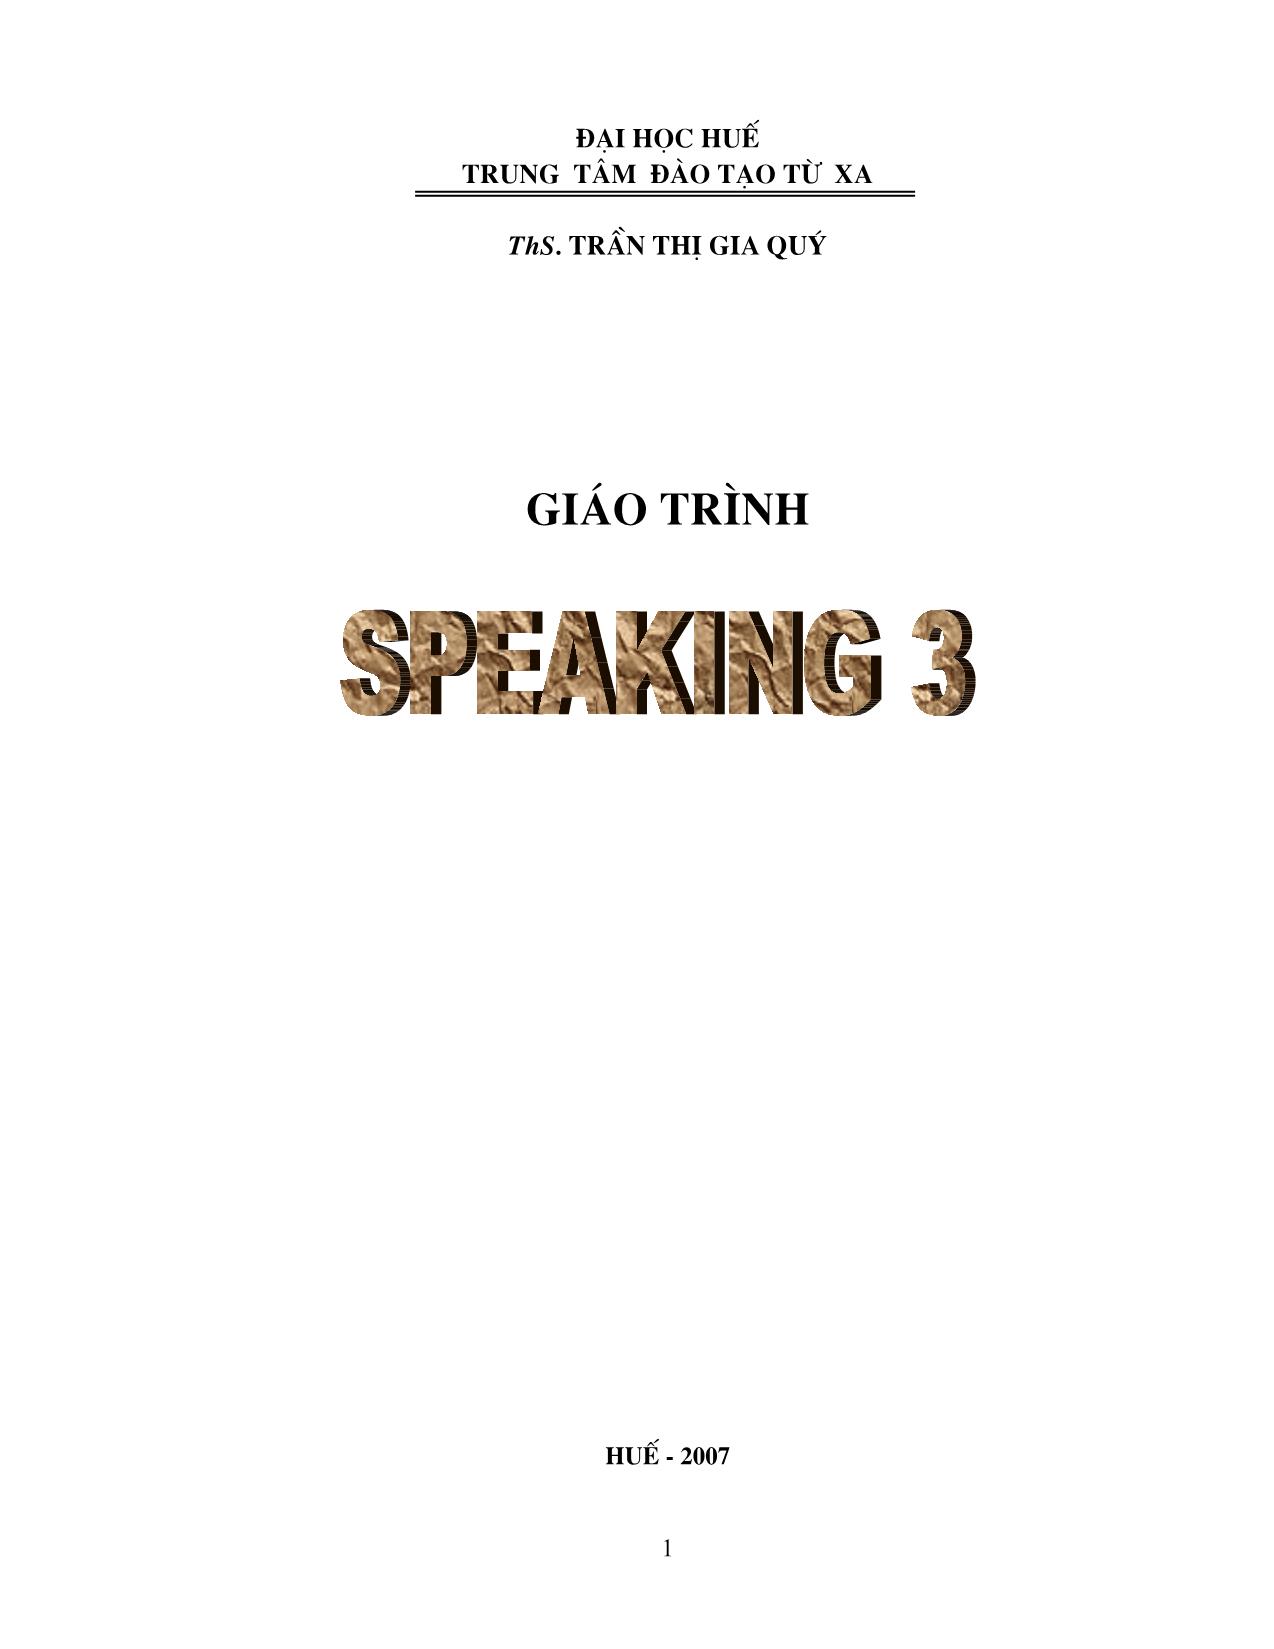 Giáo trình Speaking 3 (Phần 1) trang 1